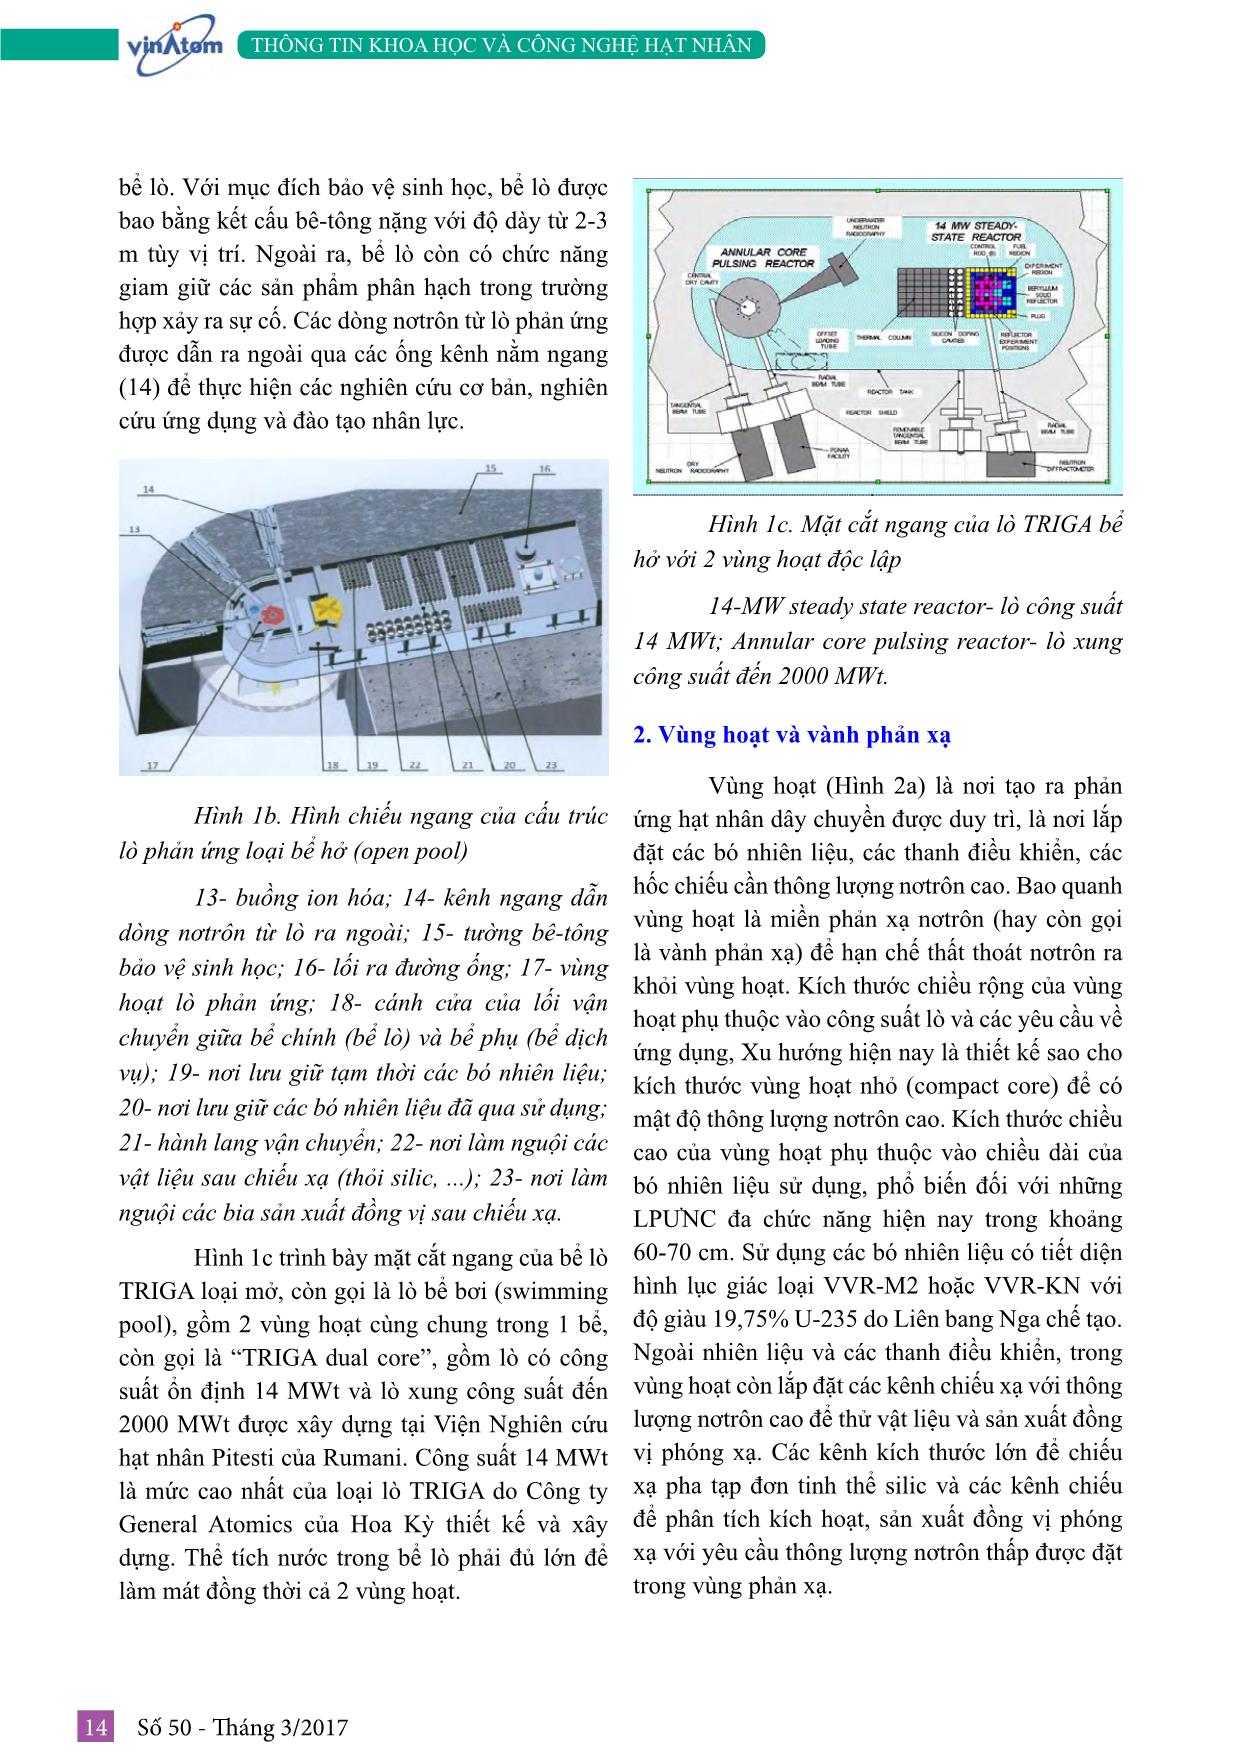 Tìm hiểu về công nghệ lò phản ứng nghiên cứu (Phần 1: Các thông tin chung) trang 4